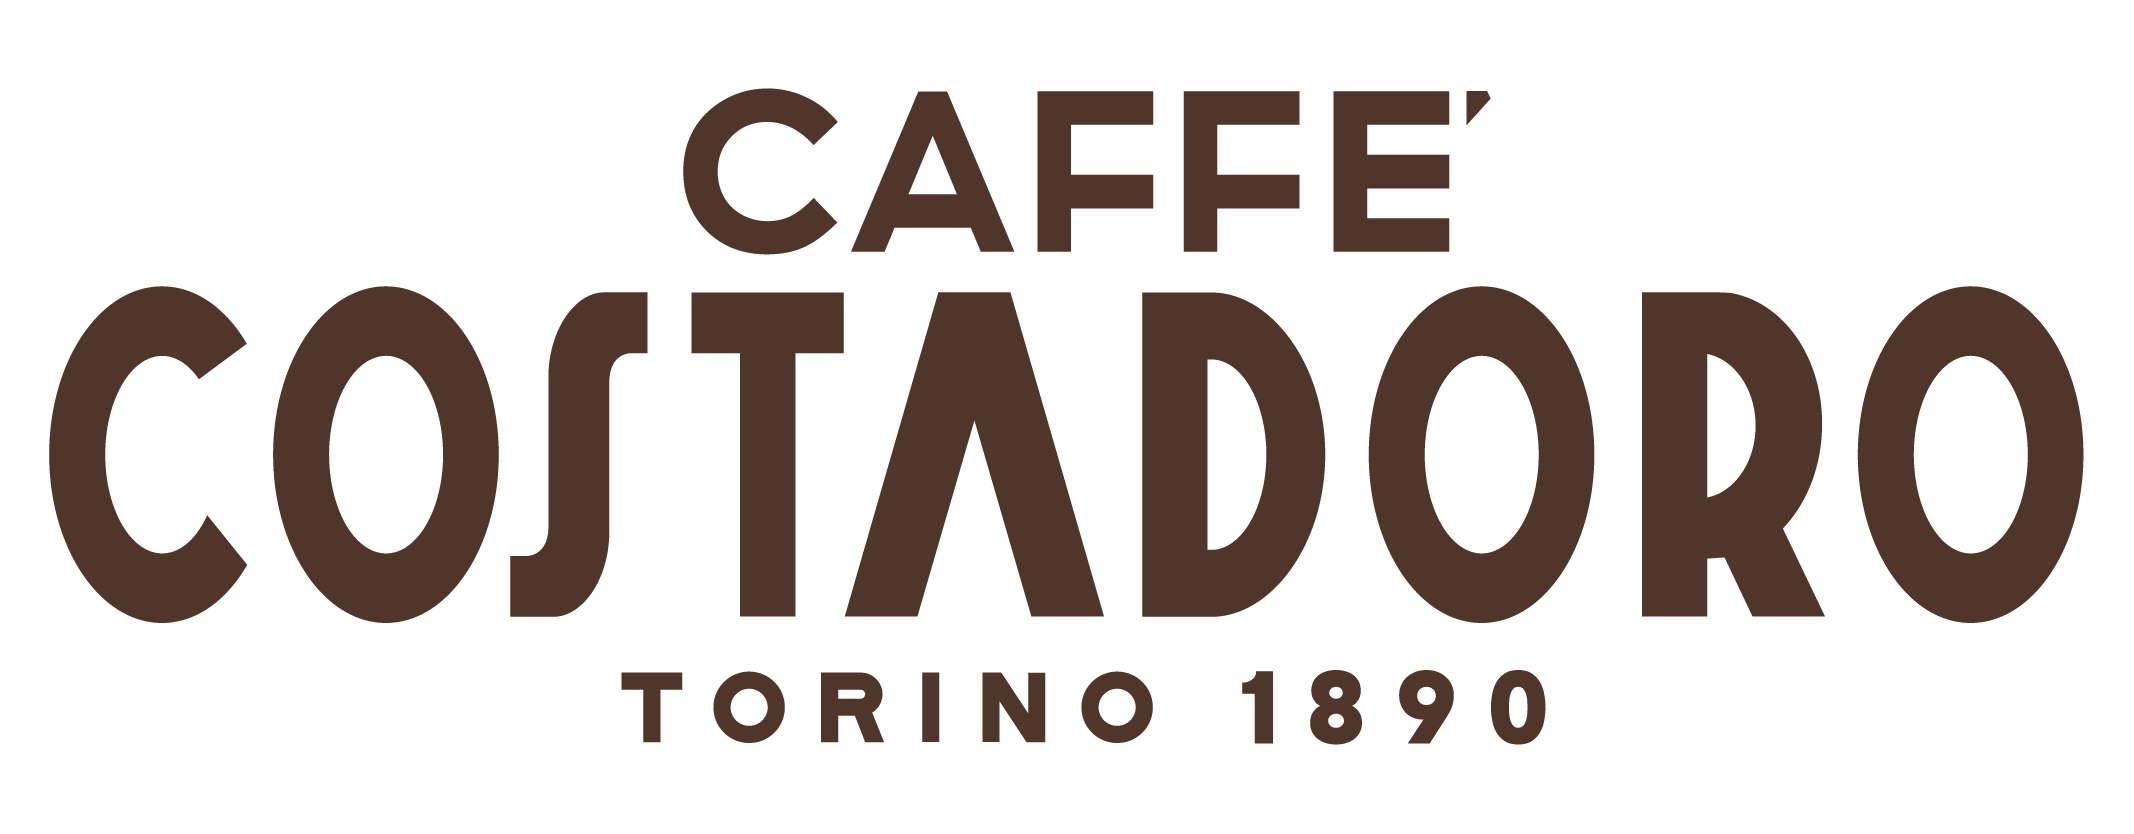 cpg-costadoro-logo